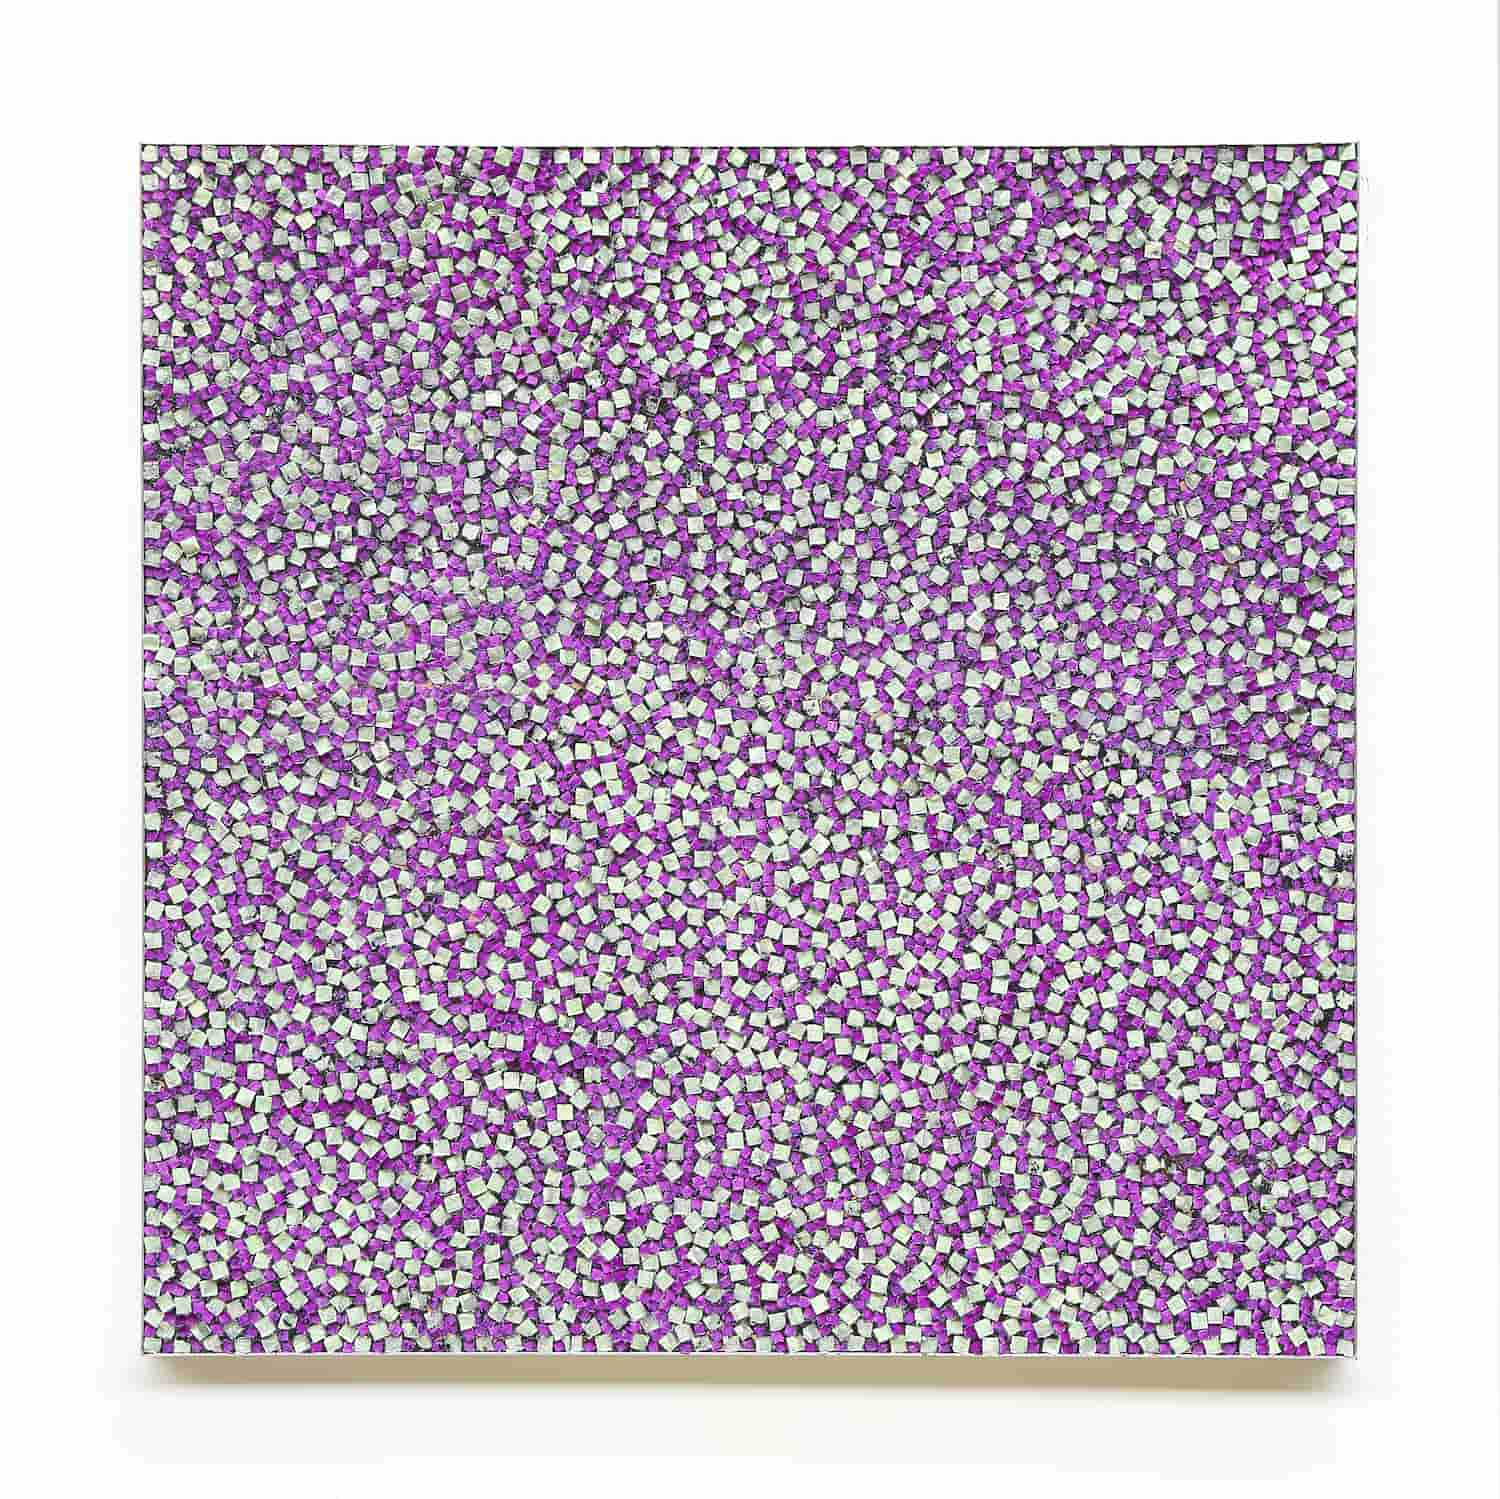 „Kreideabriss“, violette und grüne Kreide, 150 x 150 cm, 2020